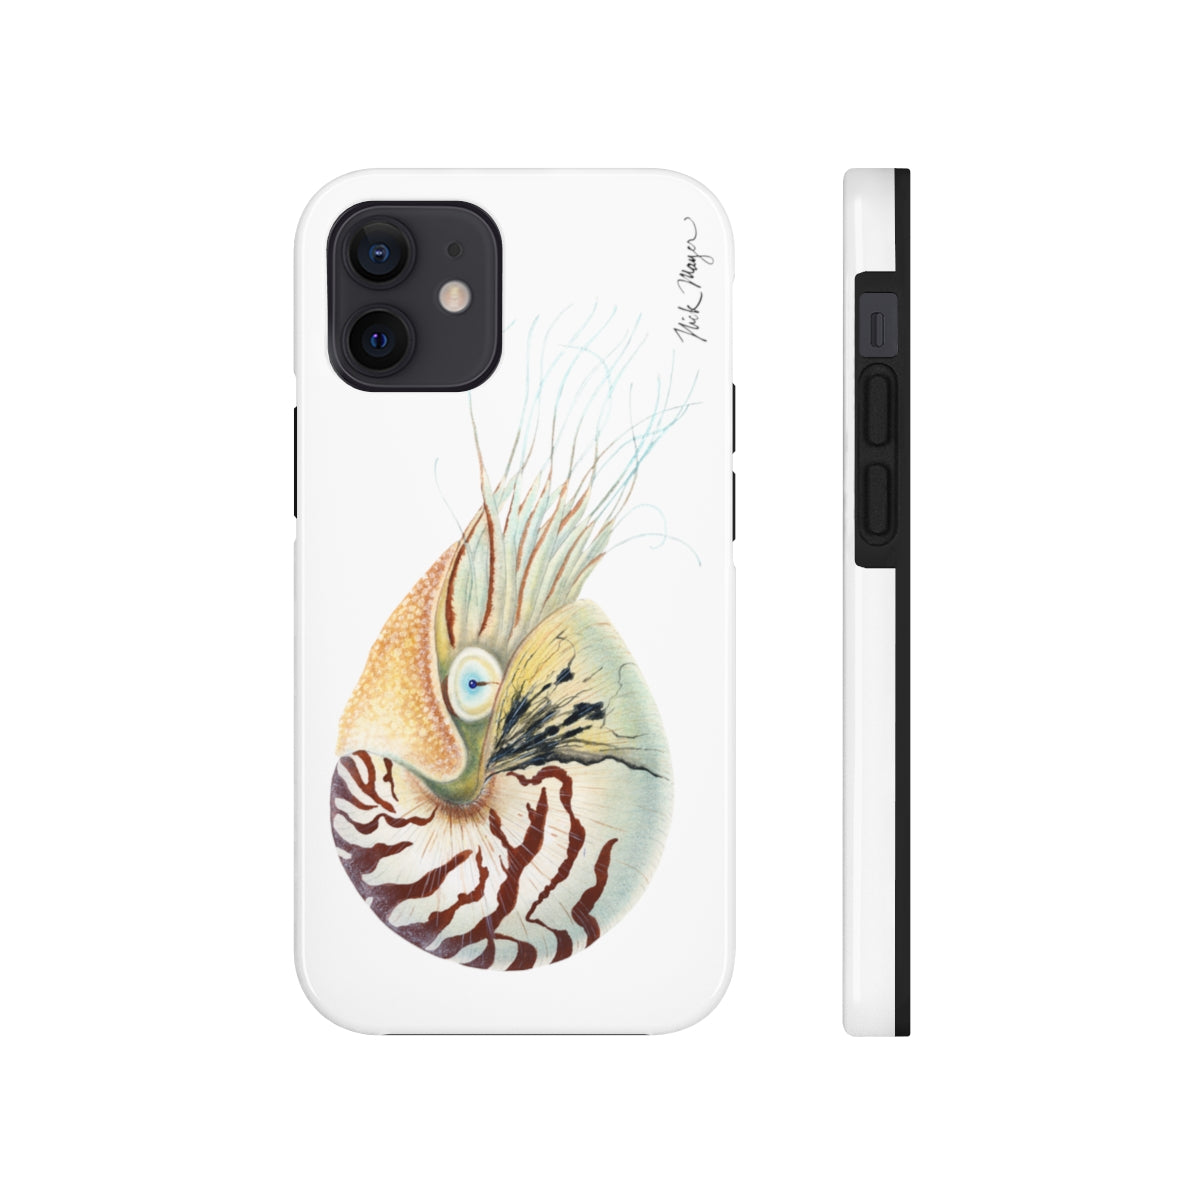 Chambered Nautilus Phone Case (iPhone)